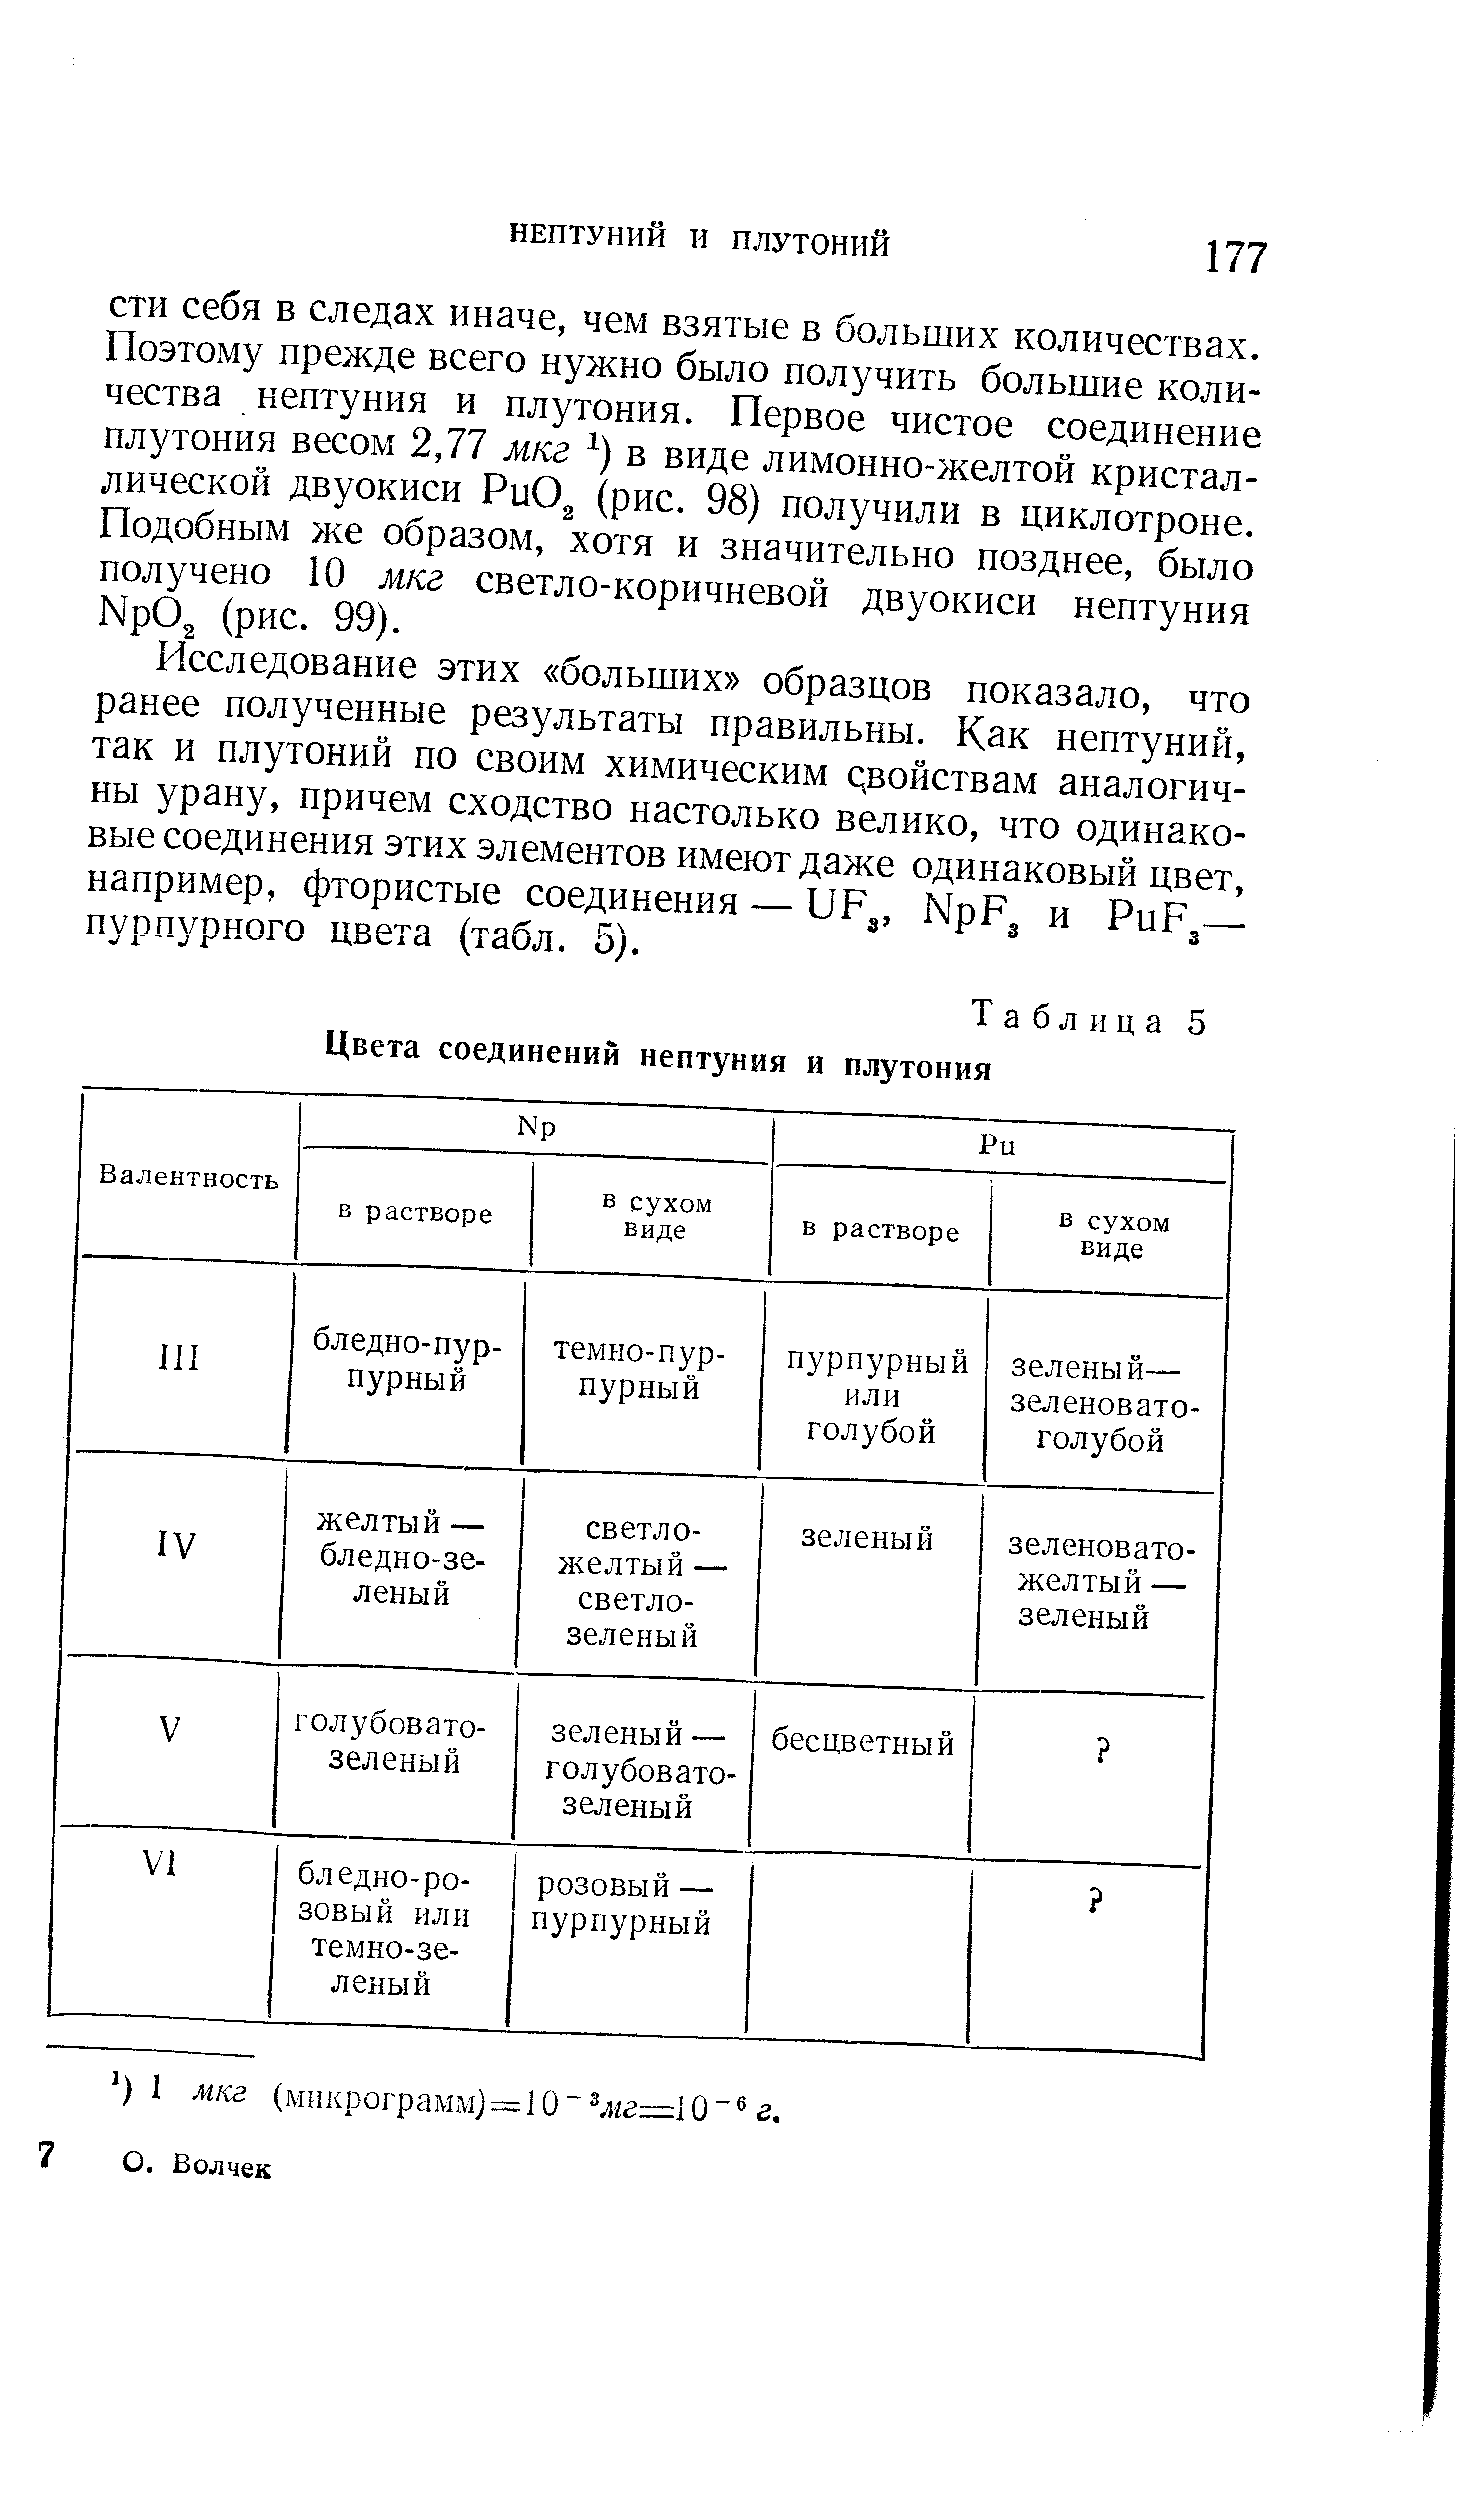 Таблица 5 Цвета соединений нептуния и плутония
